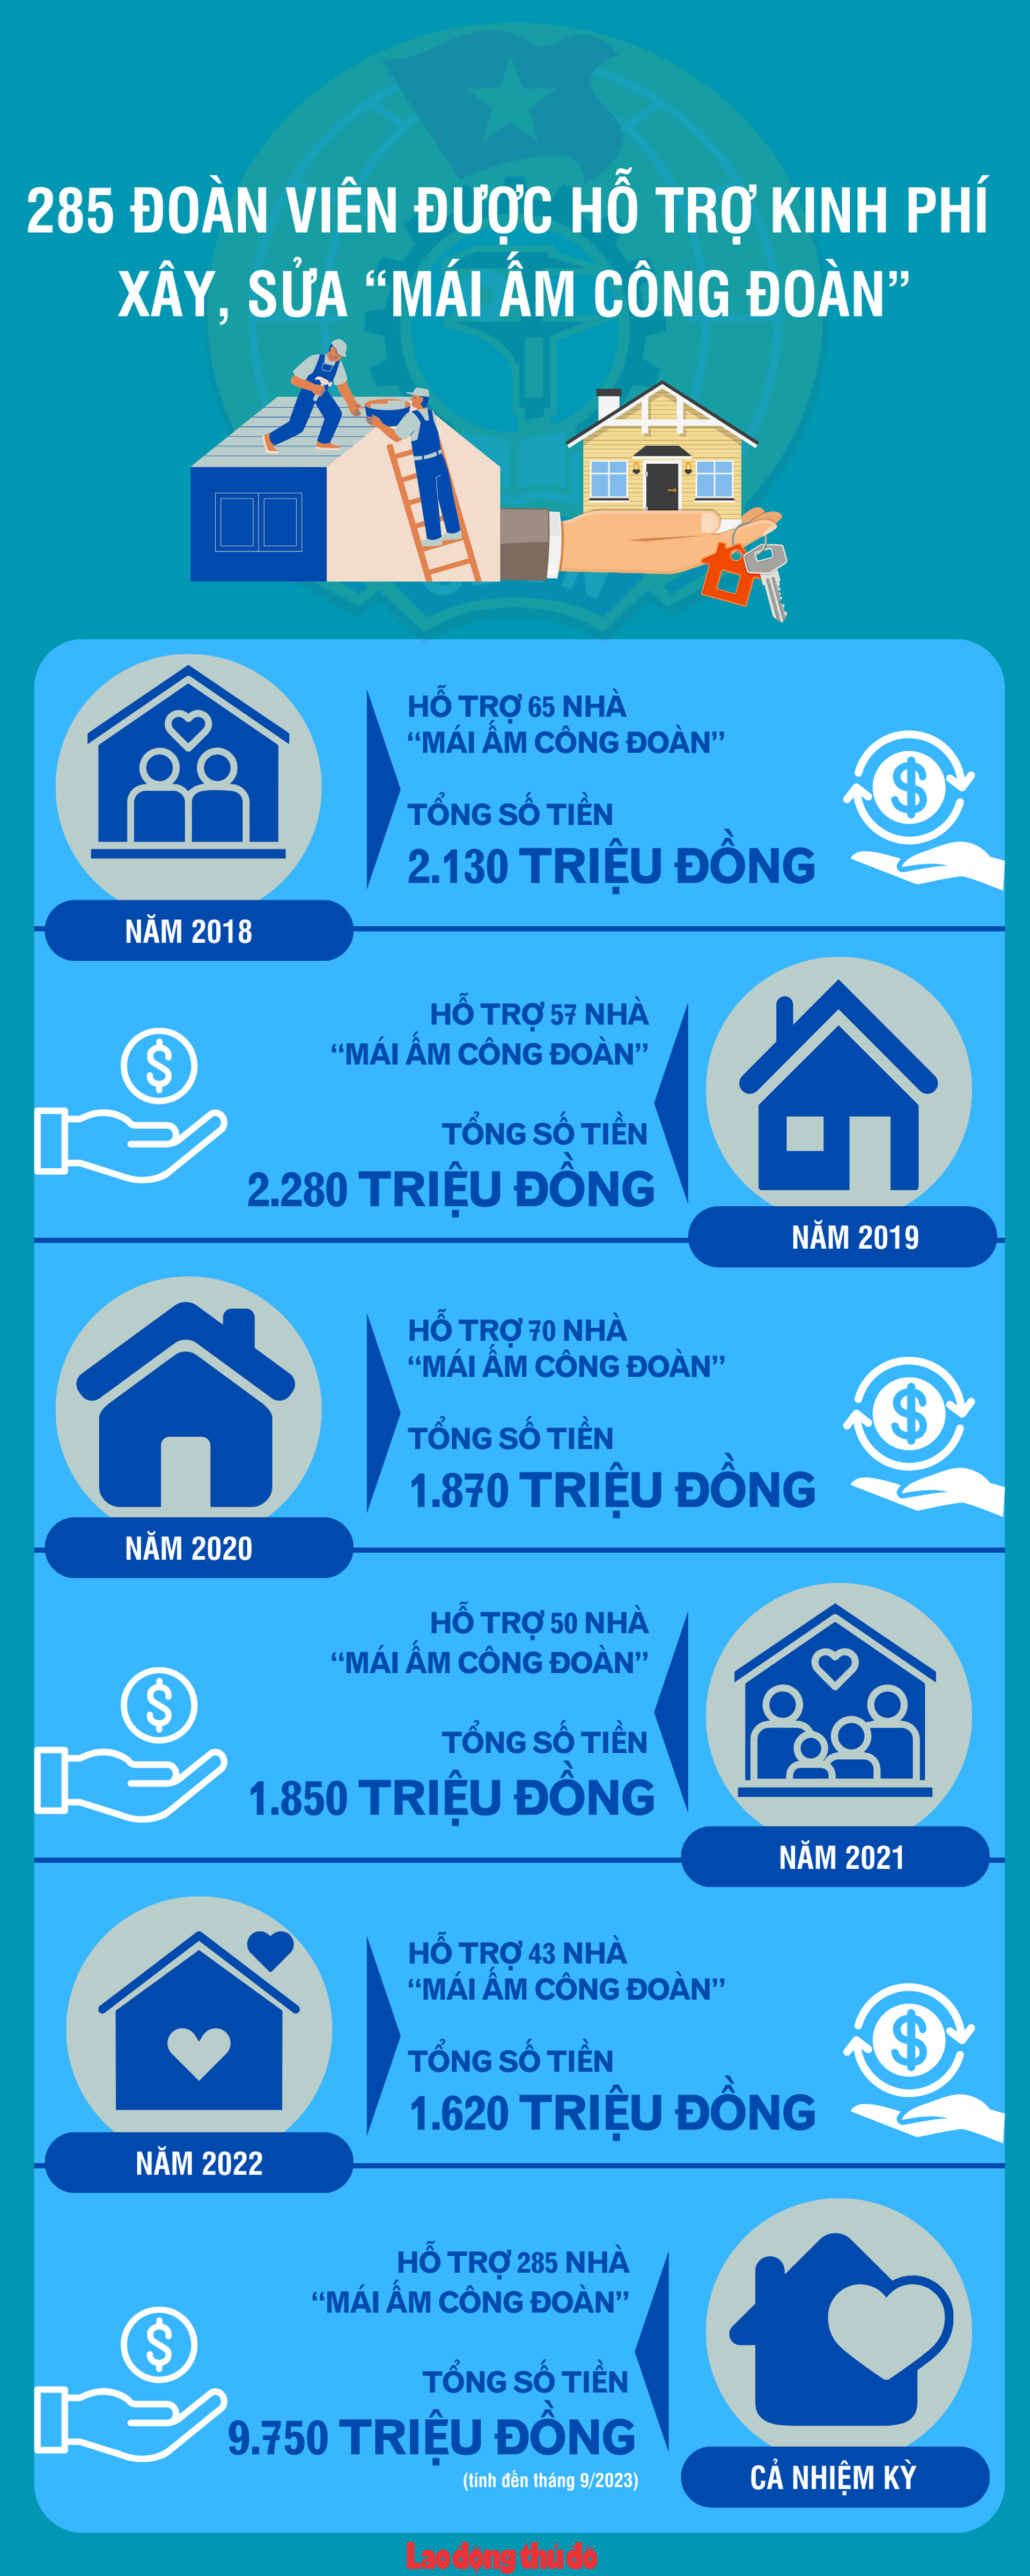 Infographic: 285 đoàn viên được hỗ trợ xây, sửa nhà “Mái ấm Công đoàn”